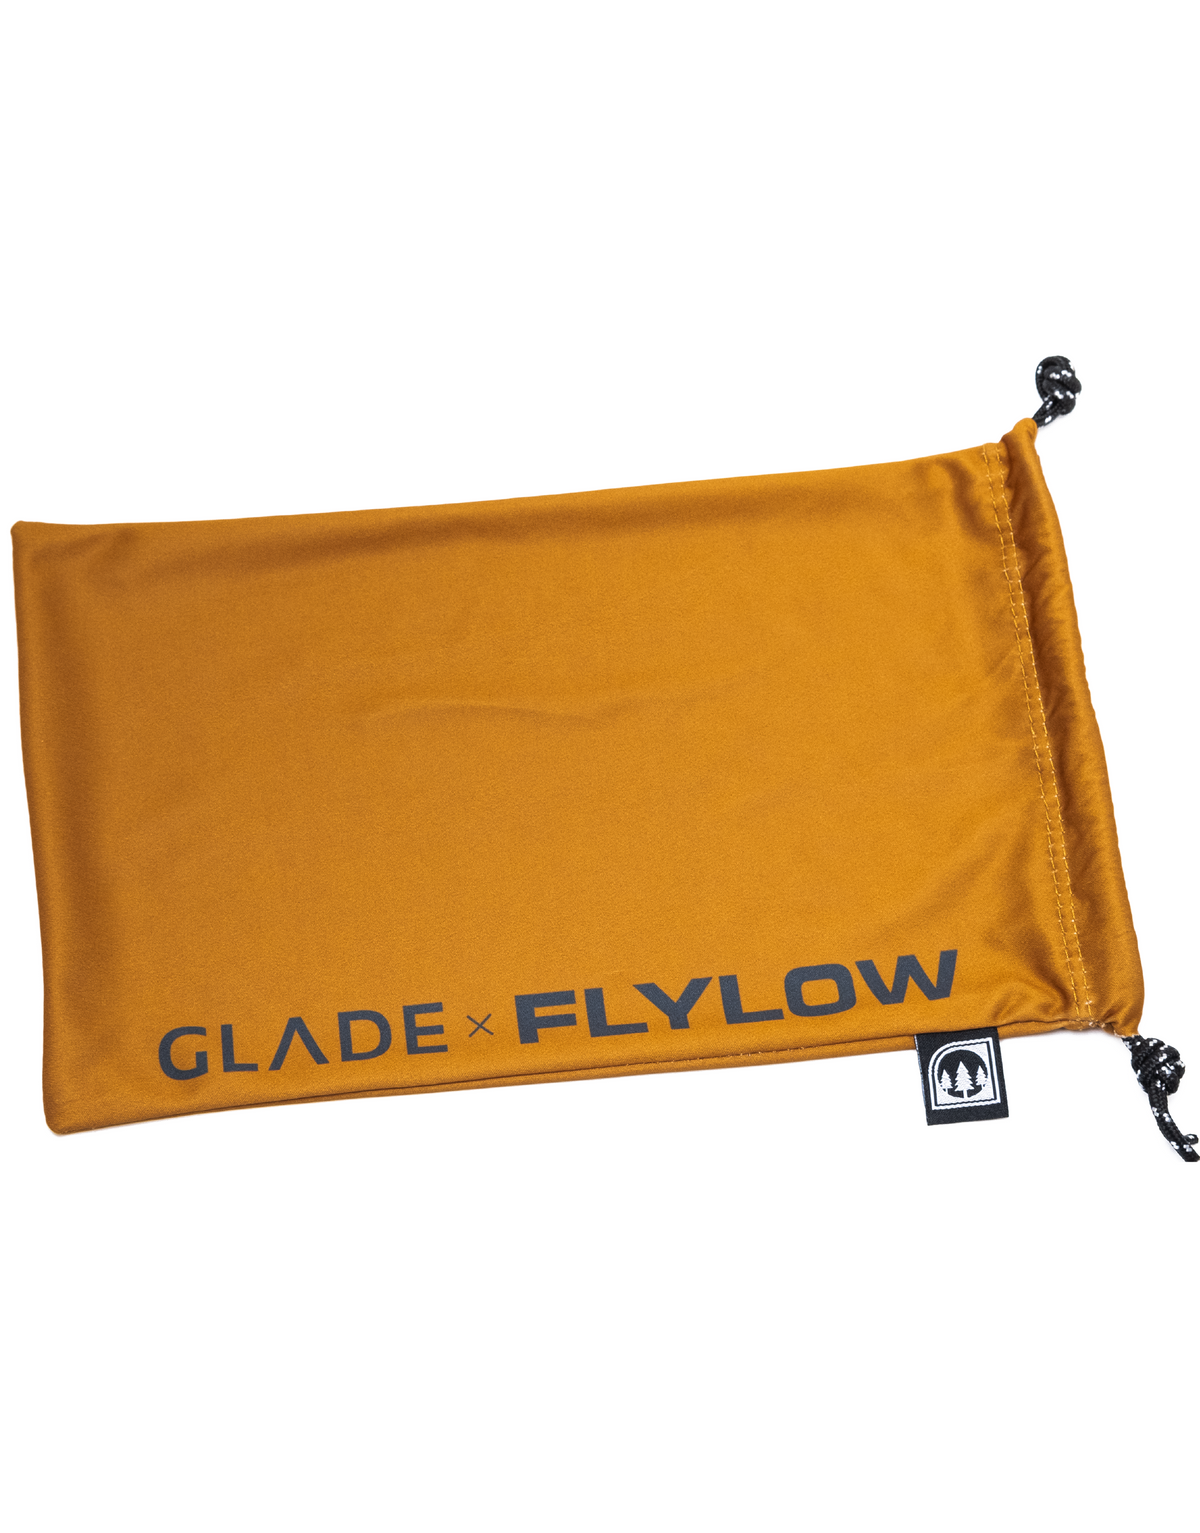 2022 Glade x Flylow Adapt 2 with Custom Hardshell Case